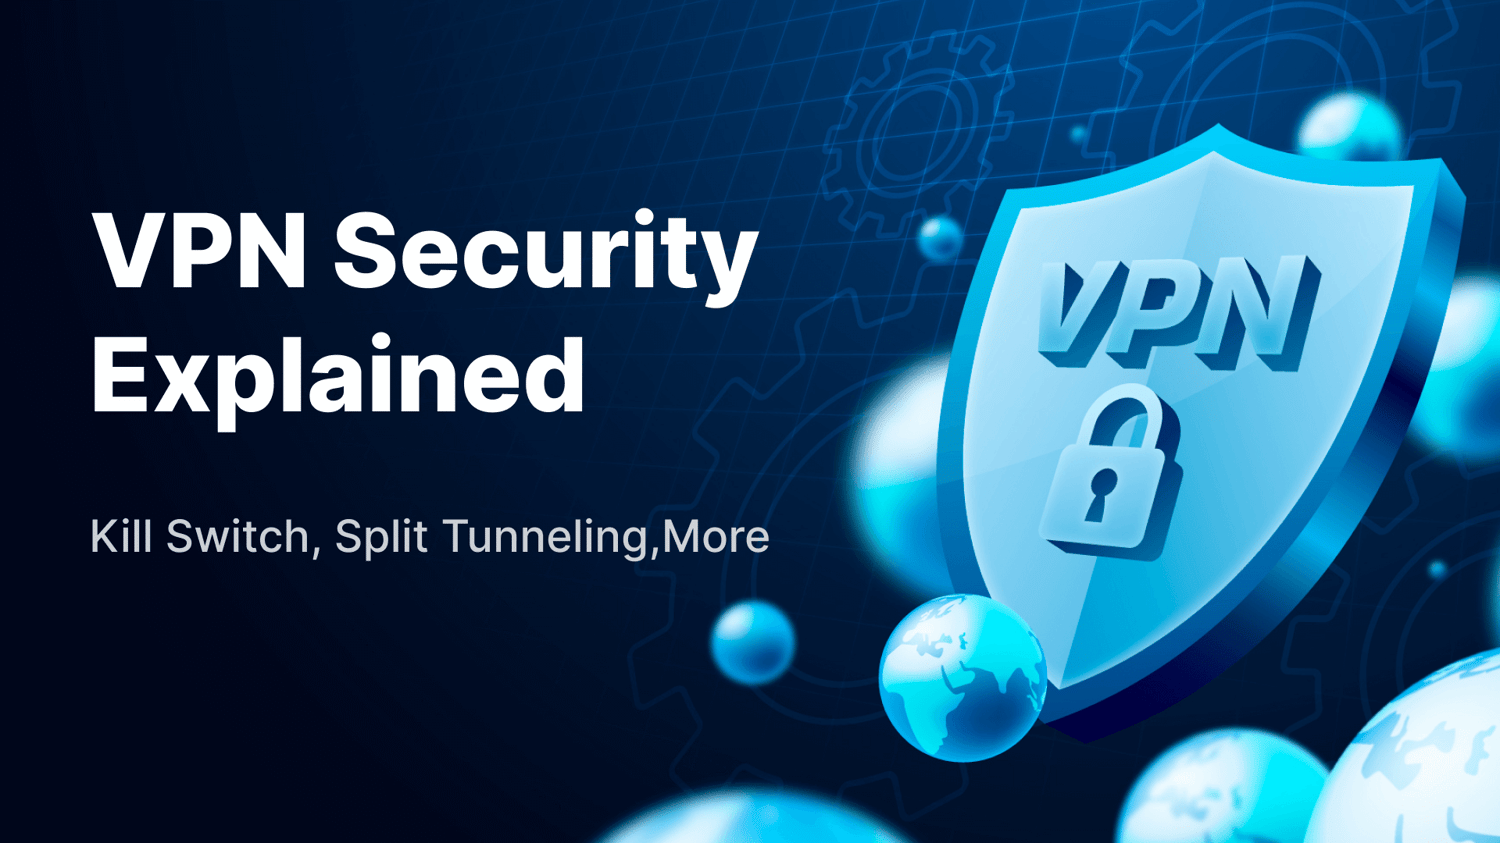 Seguridad de VPN explicada: Kill Switch, Split Tunneling, Más